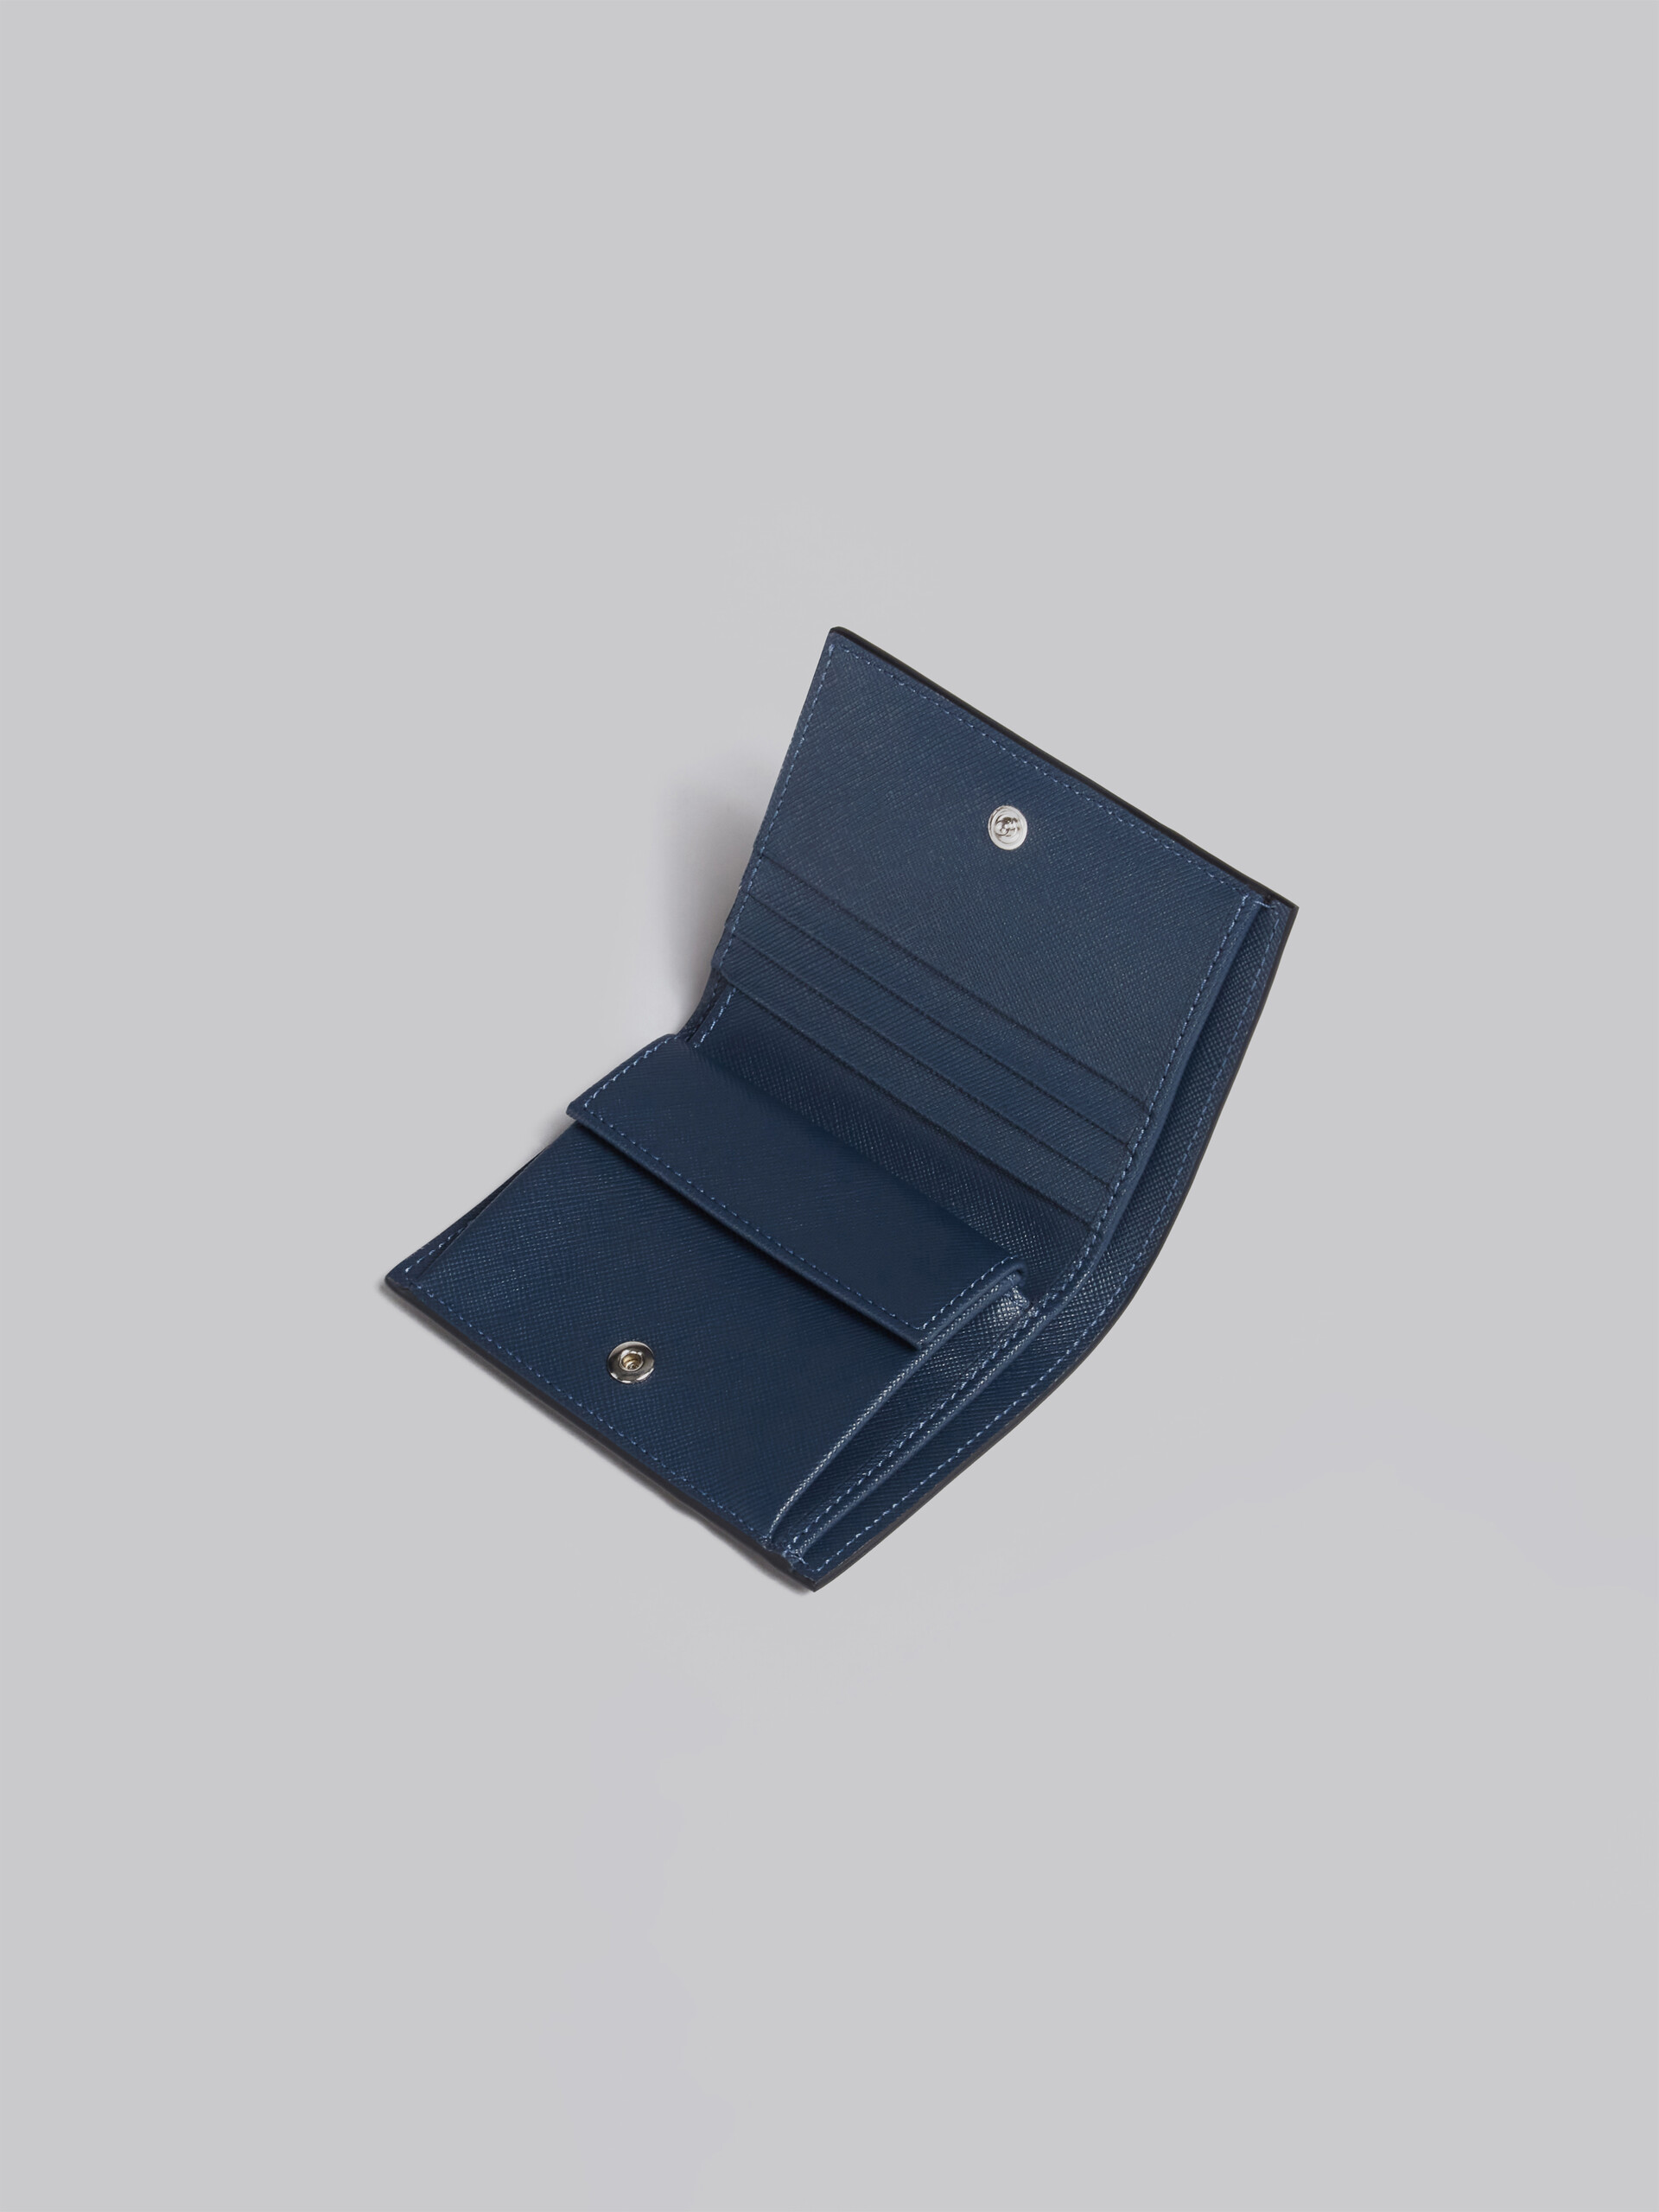 Portafoglio bi-fold in saffiano blu - Portafogli - Image 4